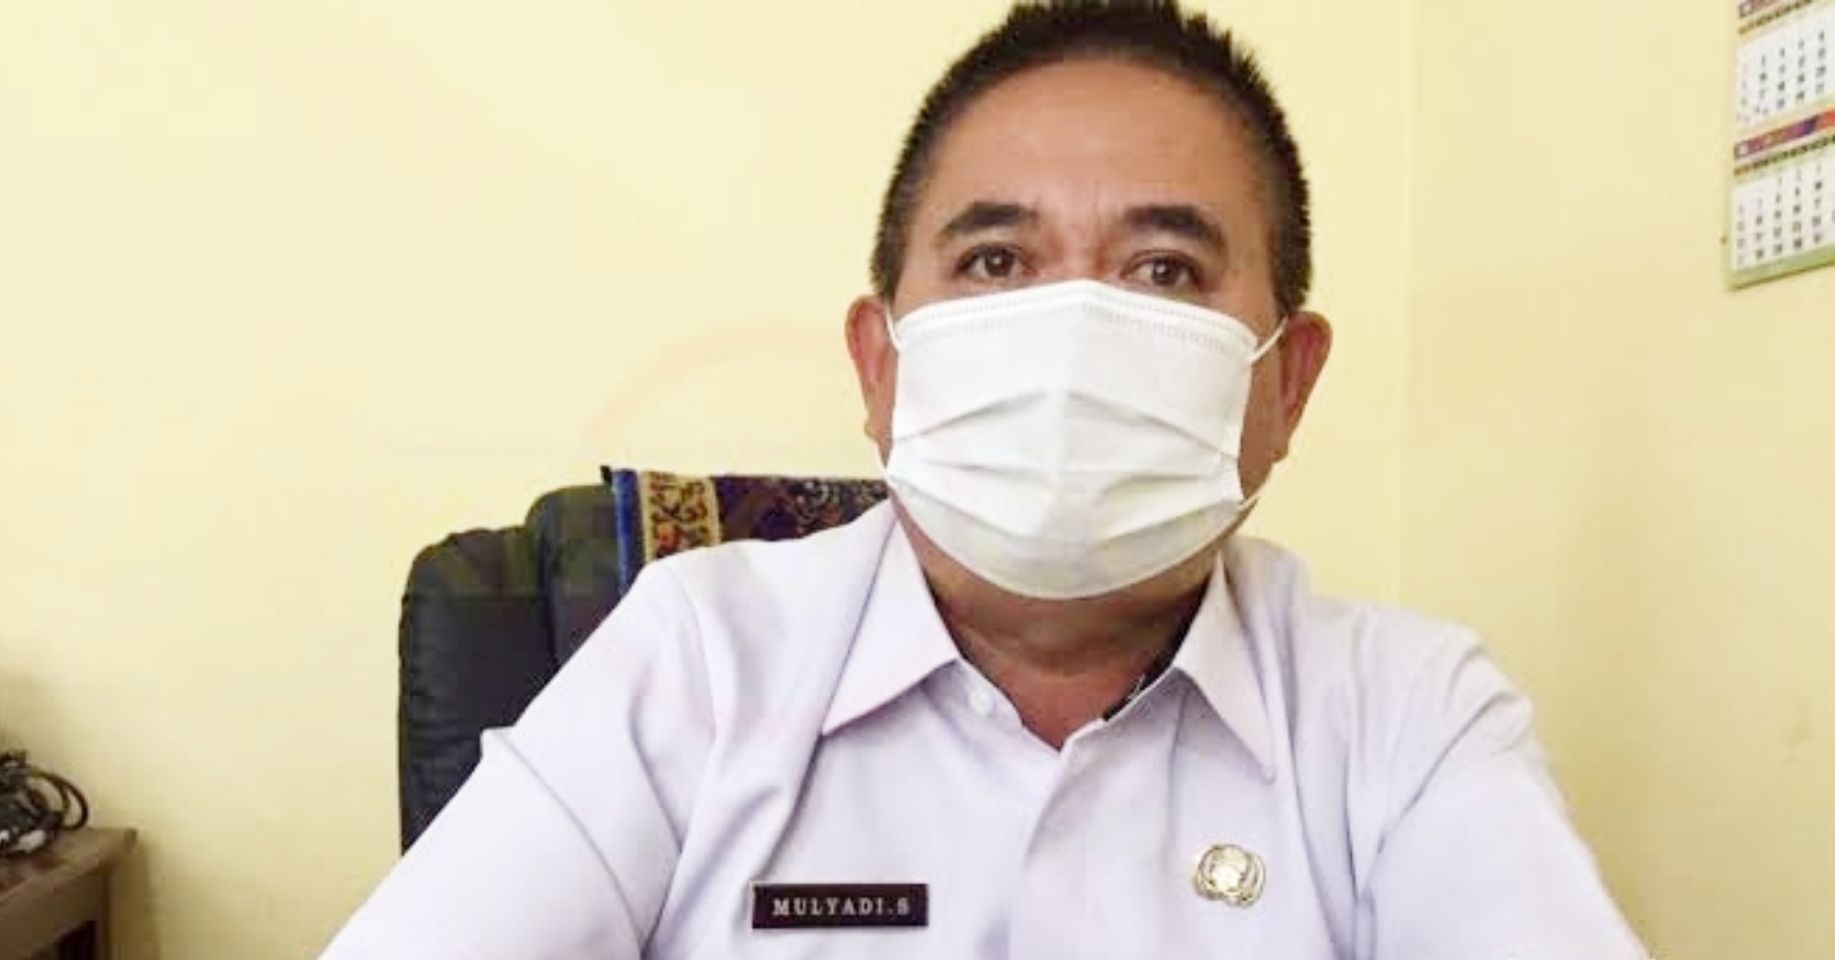 Plt Kepala Bidang Pendidikan Dasar Disdikbud Bandar Lampung, Mulyadi Syukri